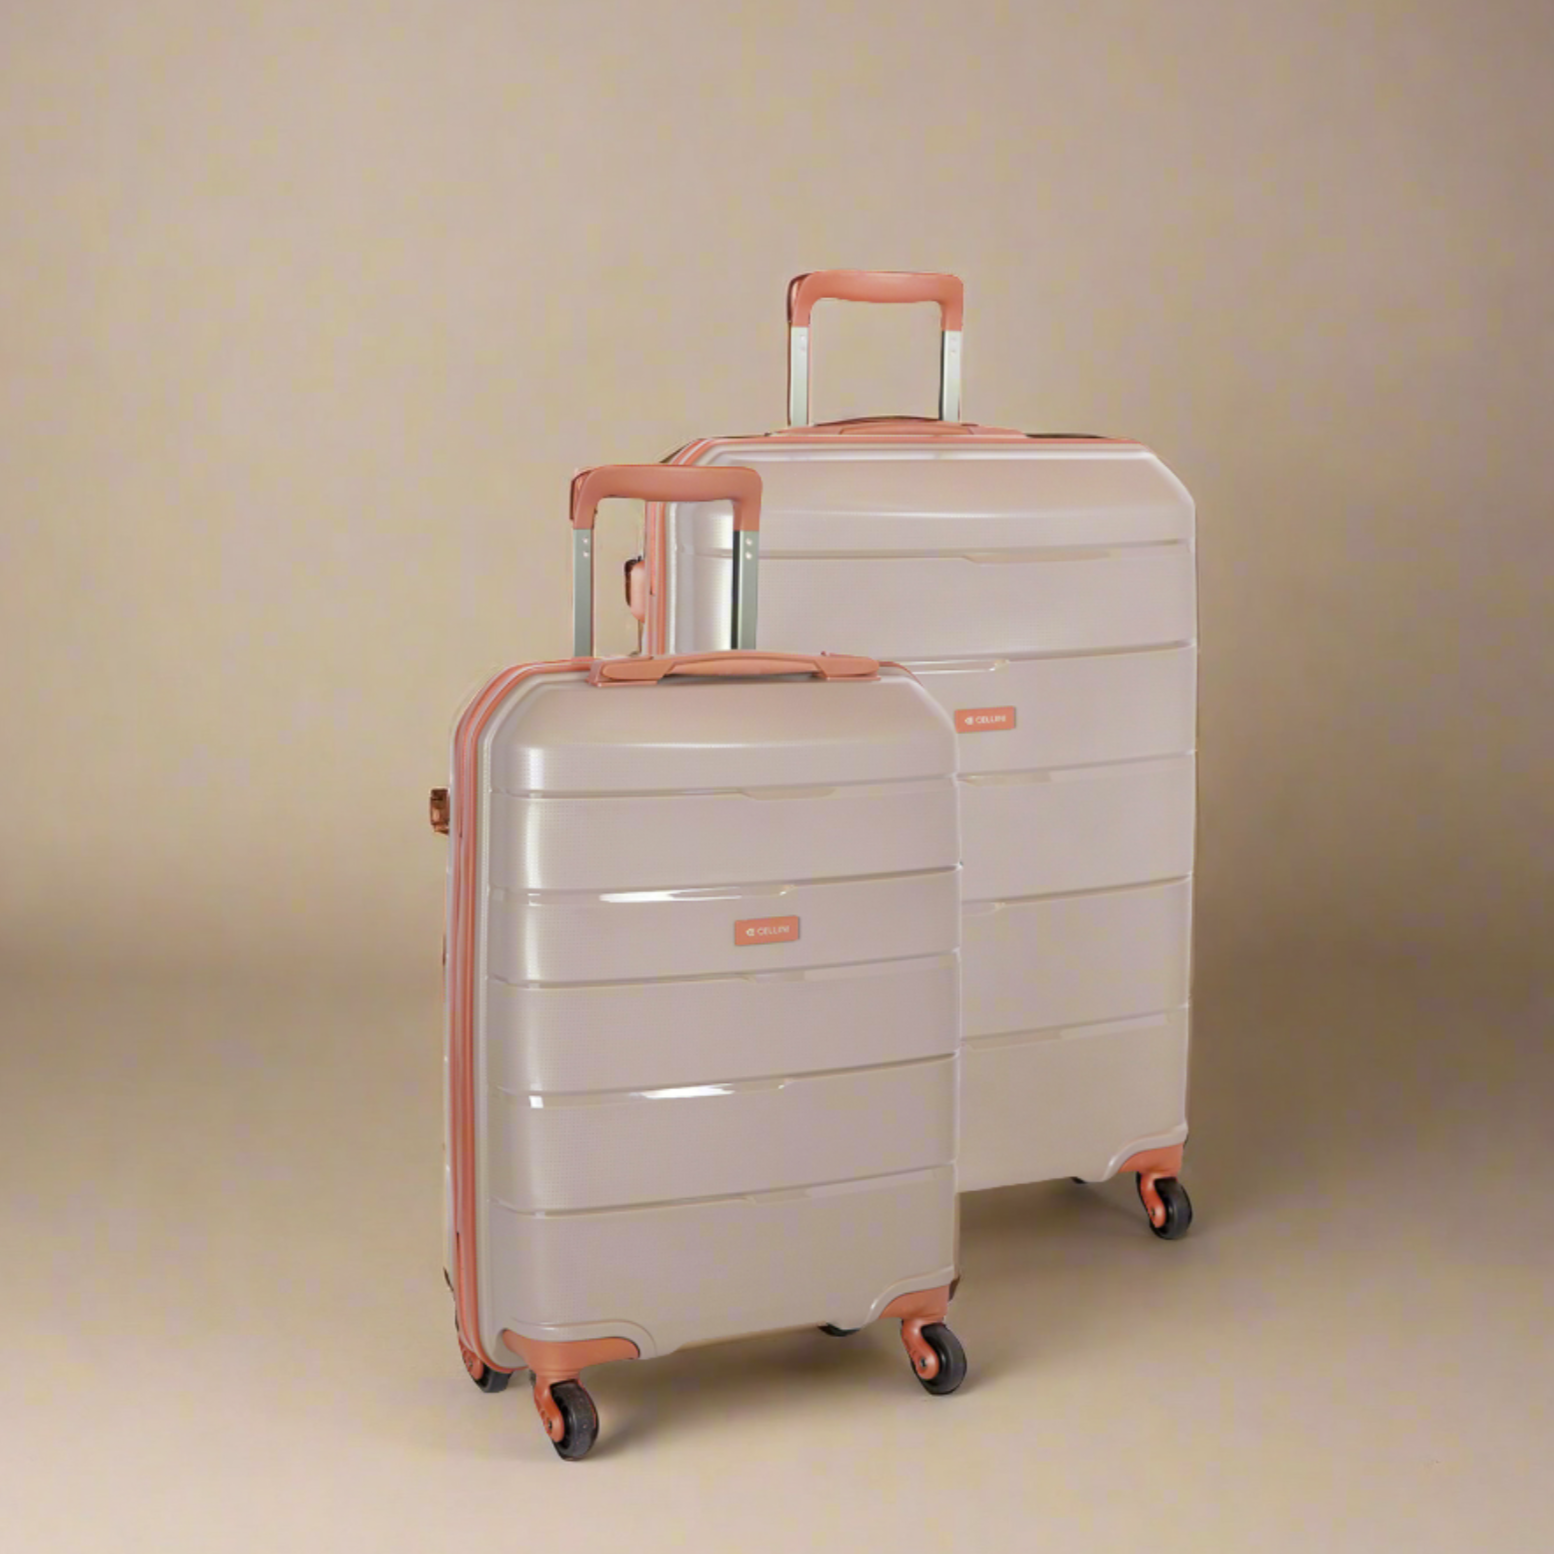 Spinn 2 Piece Luggage Set